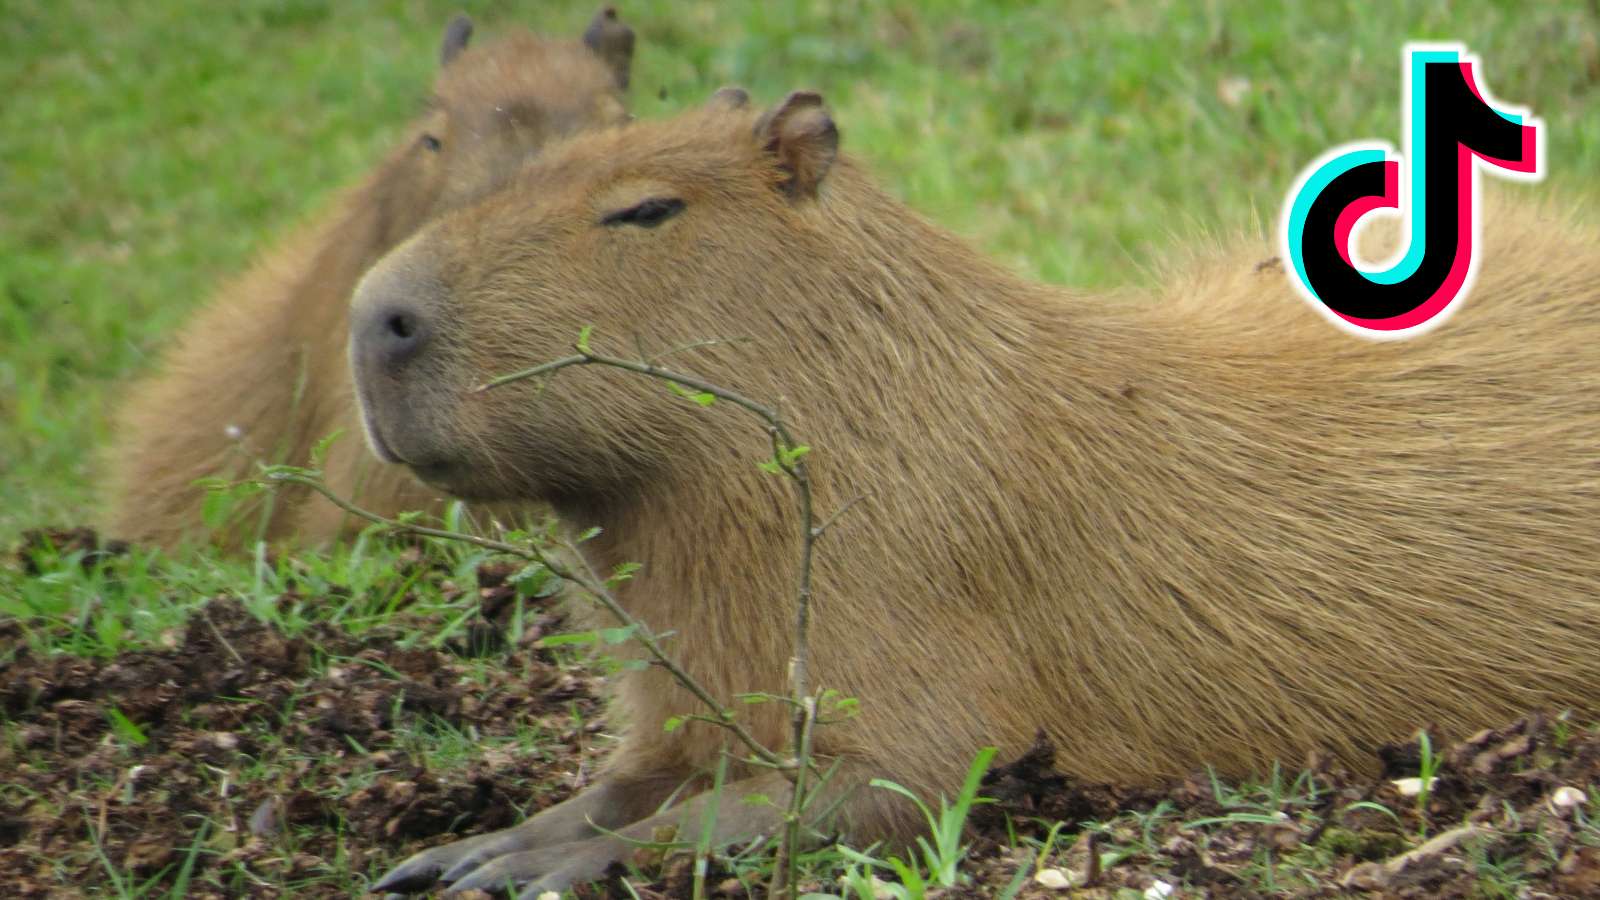 Capybara next to TikTok logo